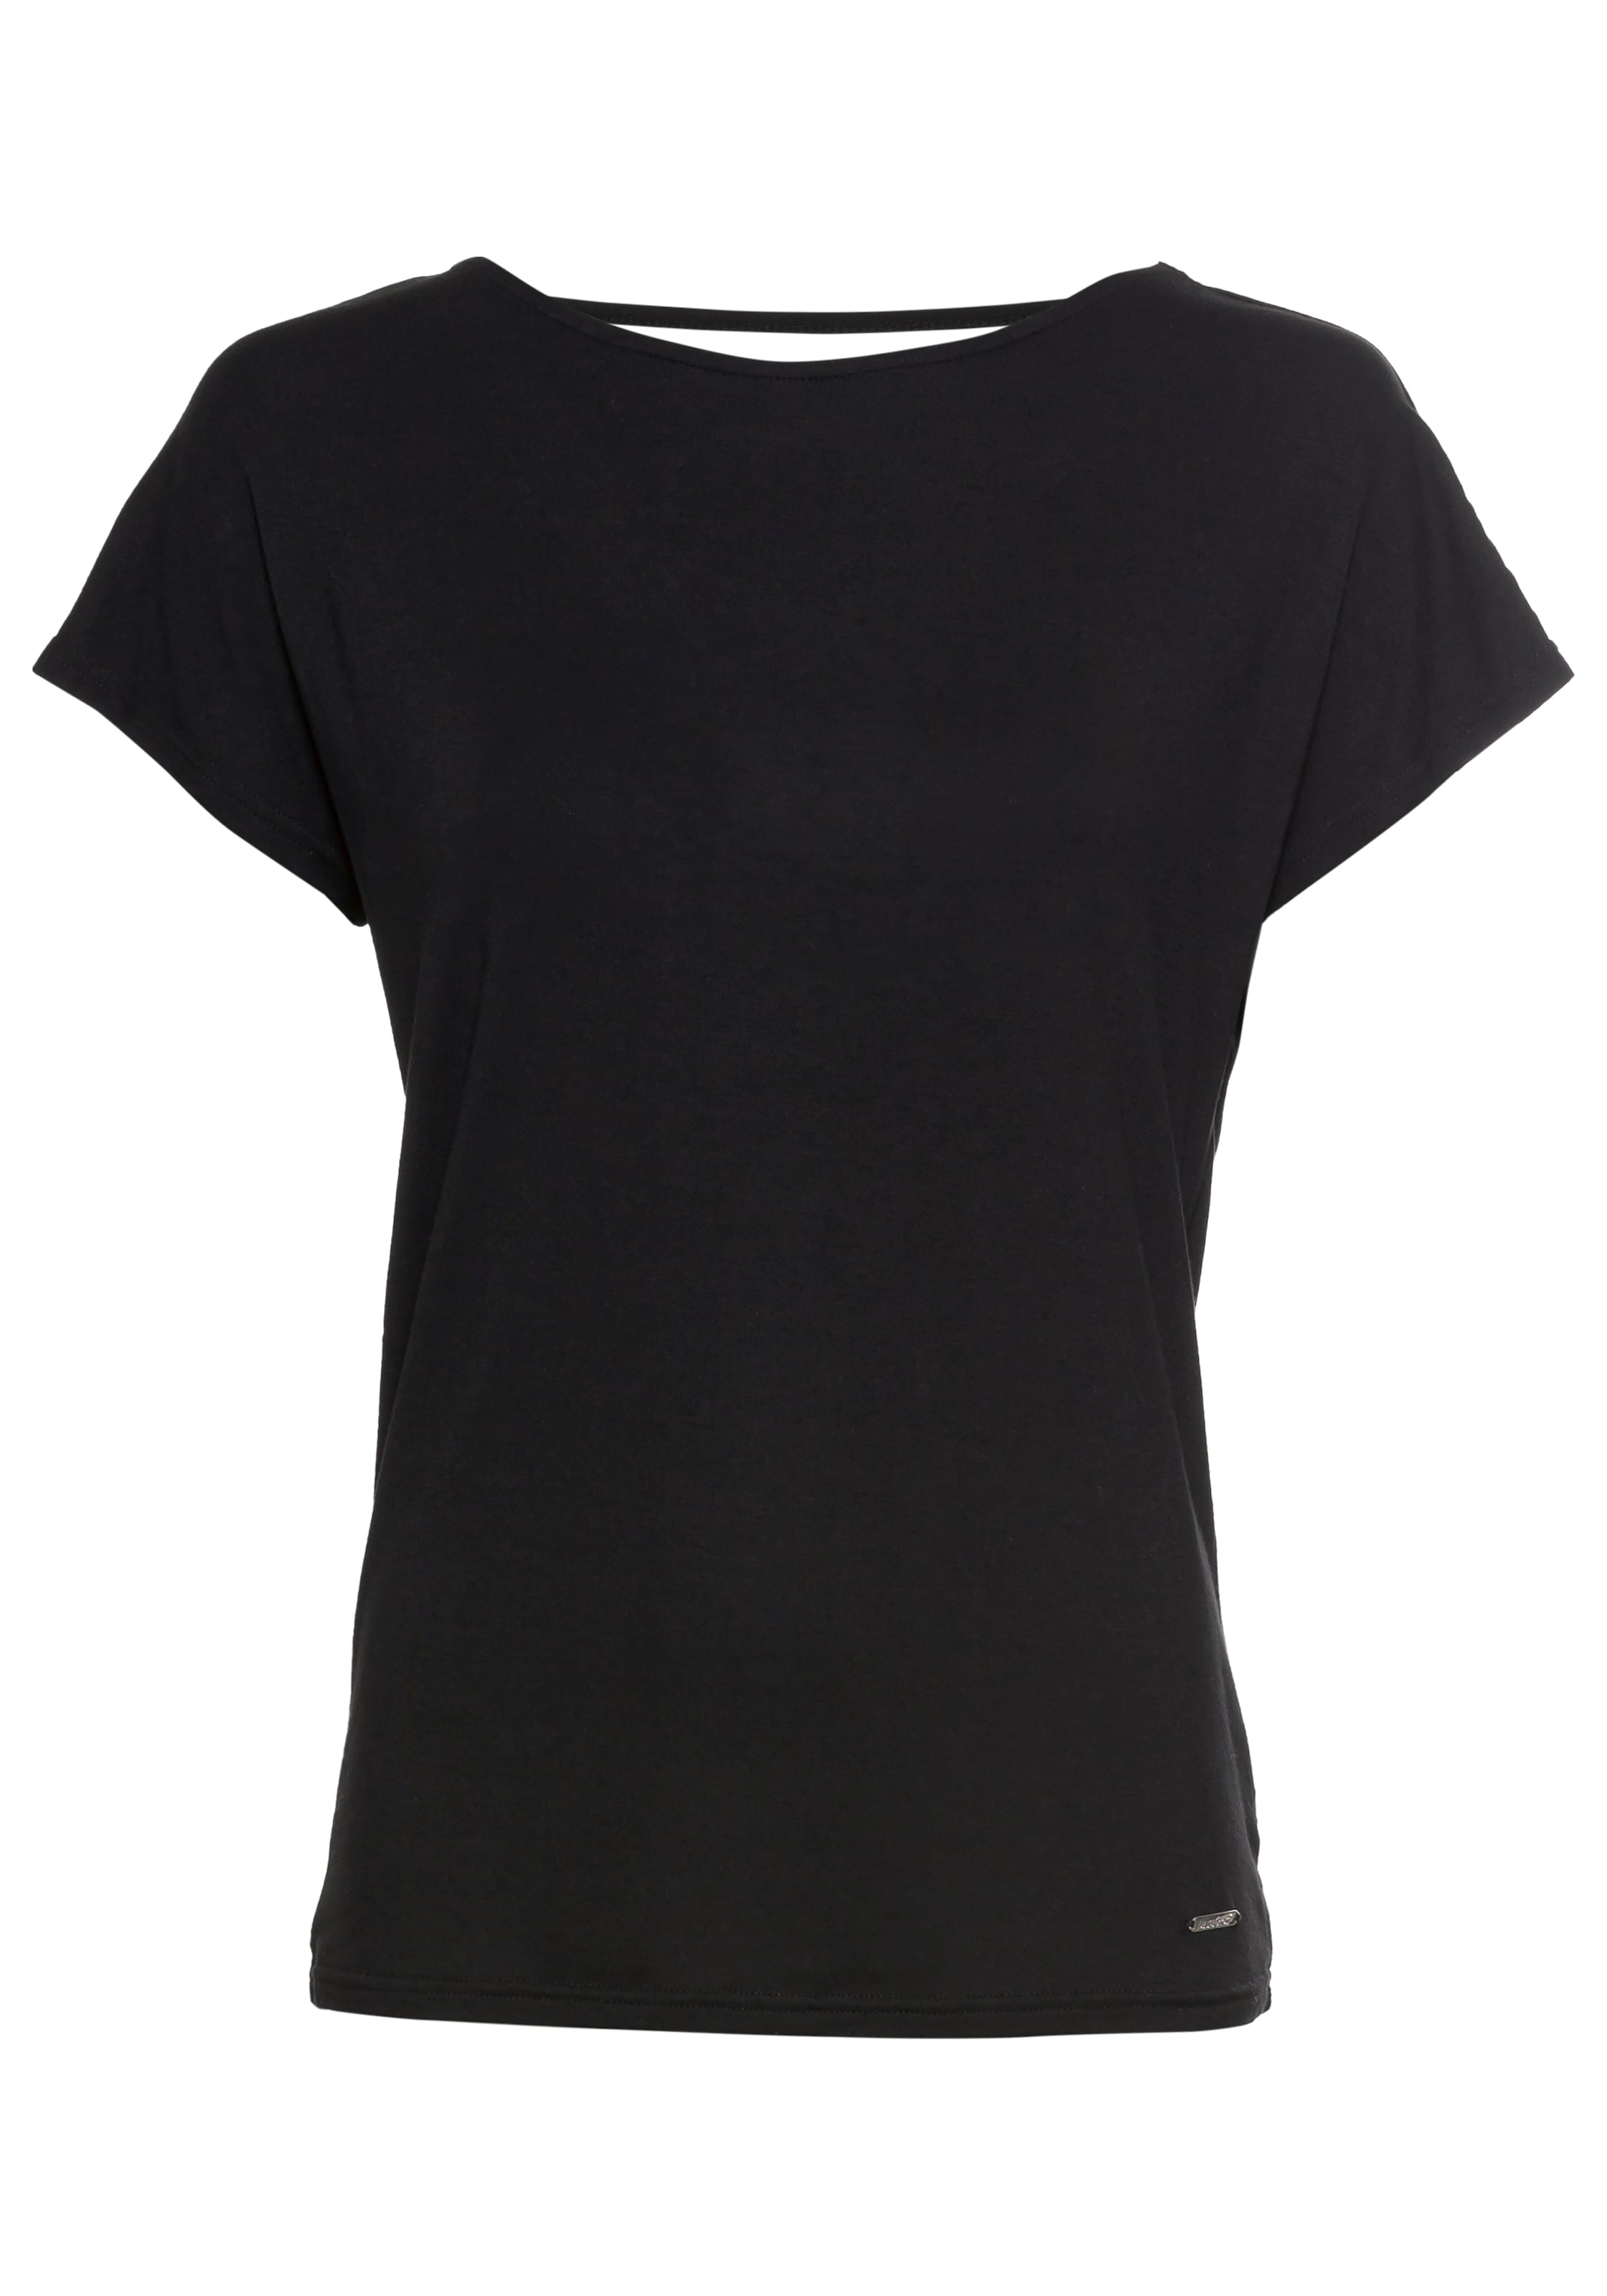 KOLLEKTION mit Laura Scott T-Shirt, walking NEUE | - online I\'m Rückenschnürung kaufen